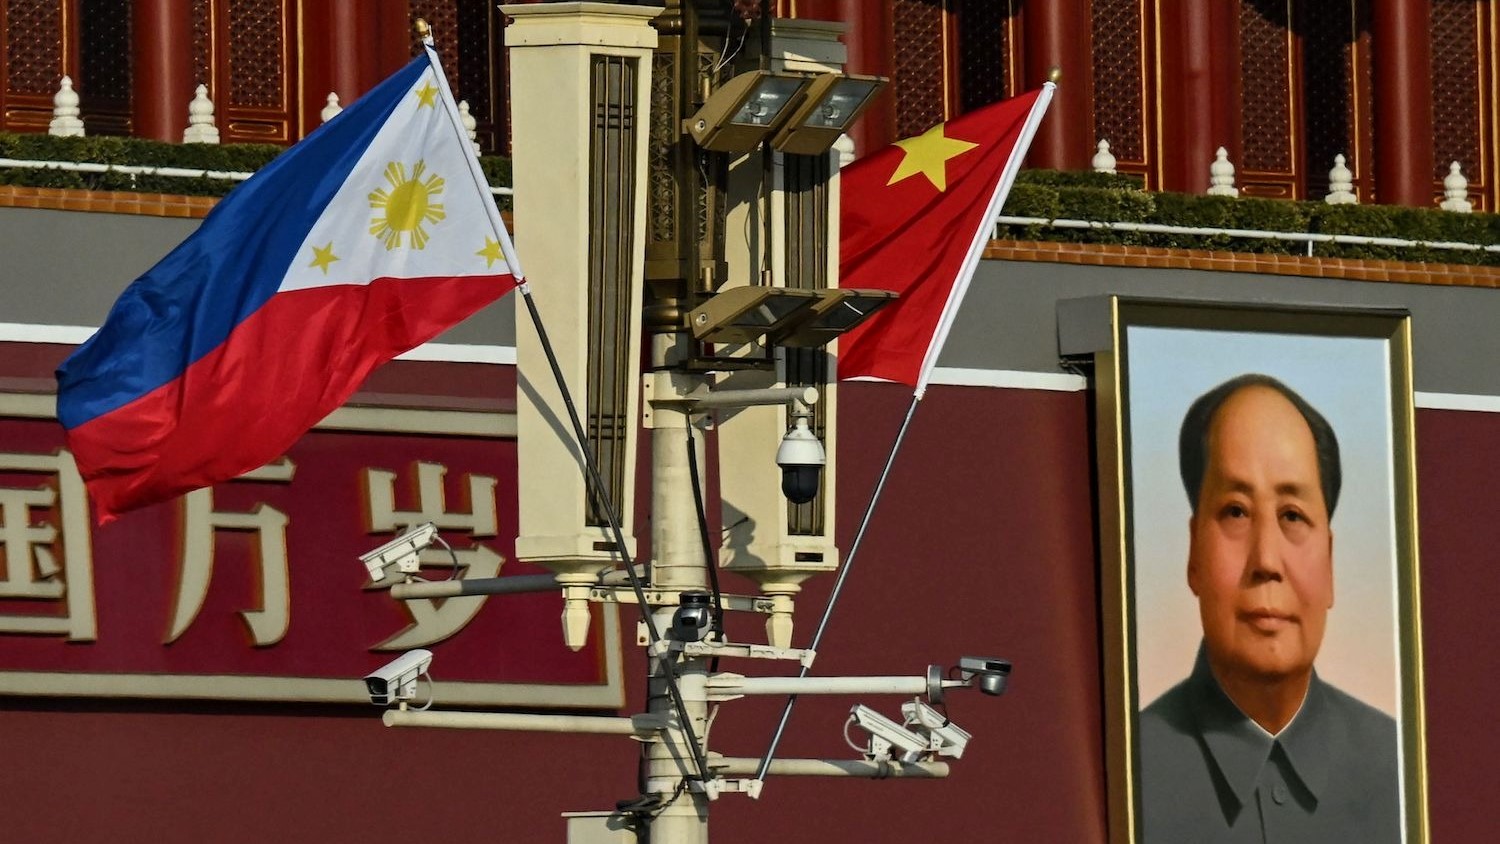 شوهد العلمان الوطنيان للفيليبين والصين بالقرب من بوابة تيانانمين خلال الزيارة الرسمية التي قام بها الرئيس الفلبيني فرديناند ماركوس جونيور إلى بكين الأربعاء